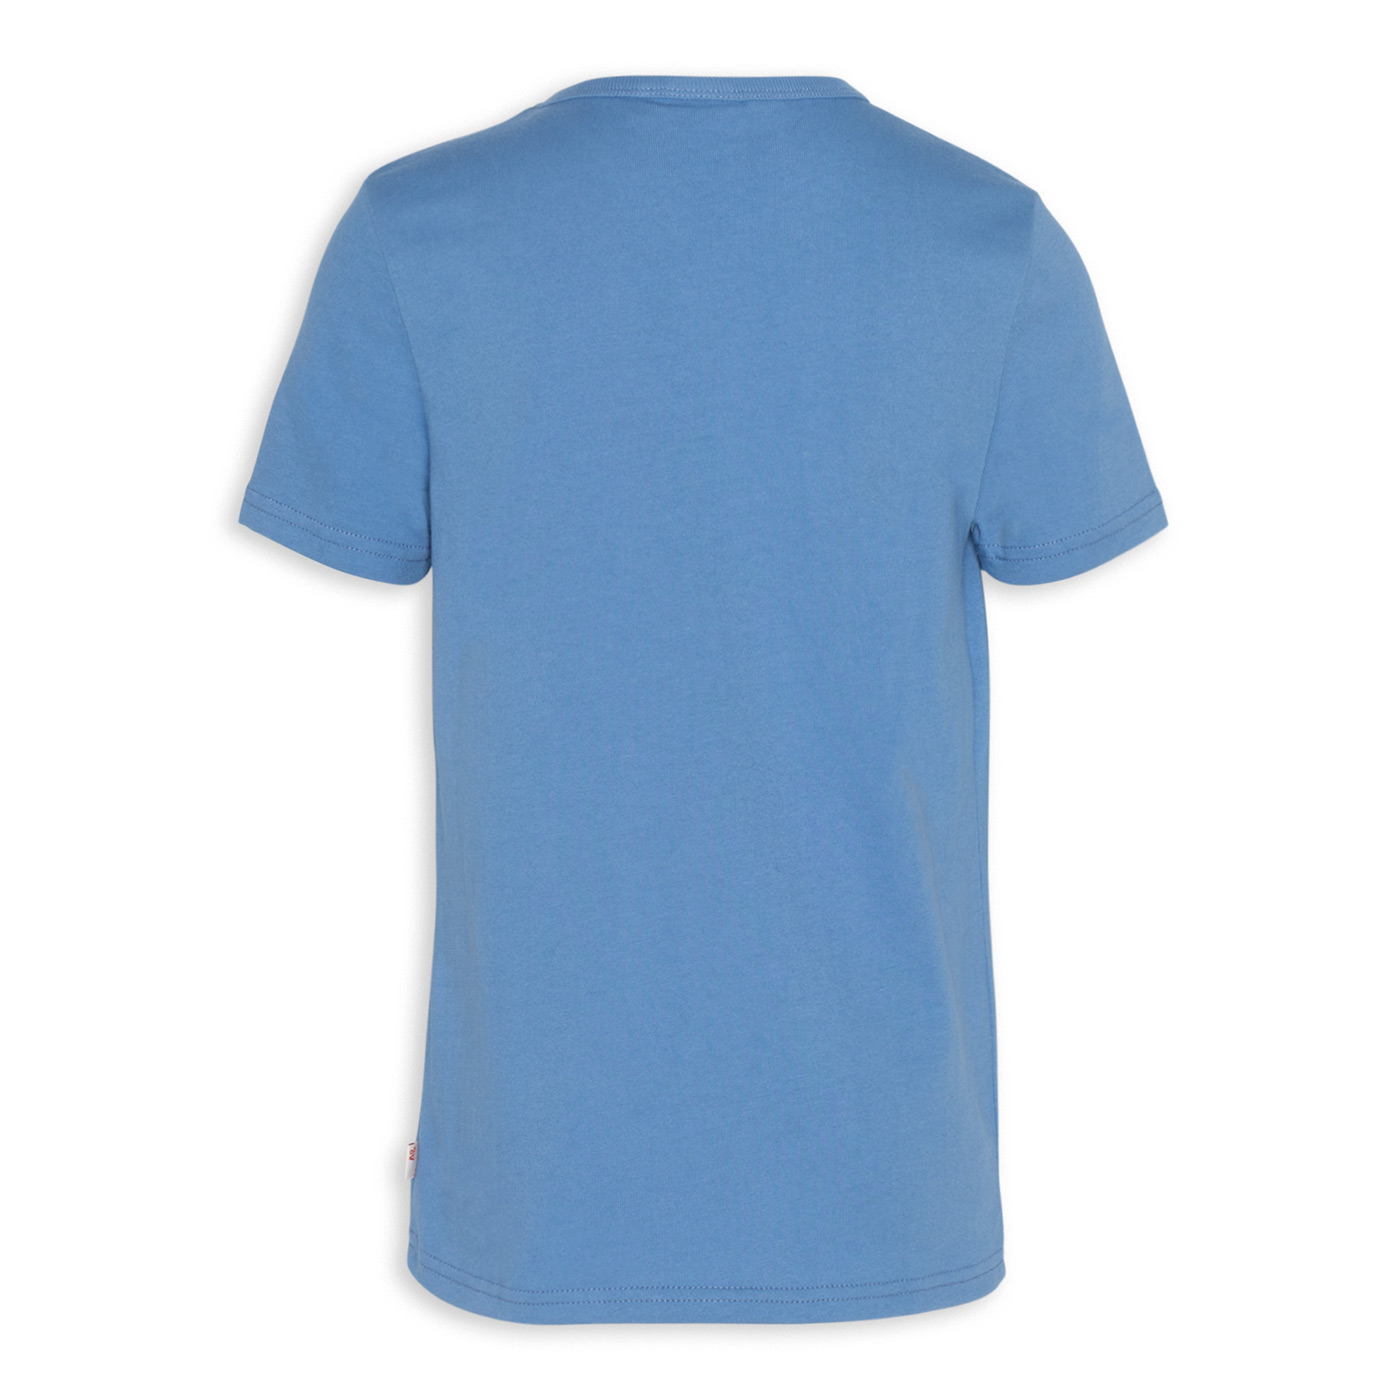 Παιδική Μπλούζα T-Shirt Easy Μπλε